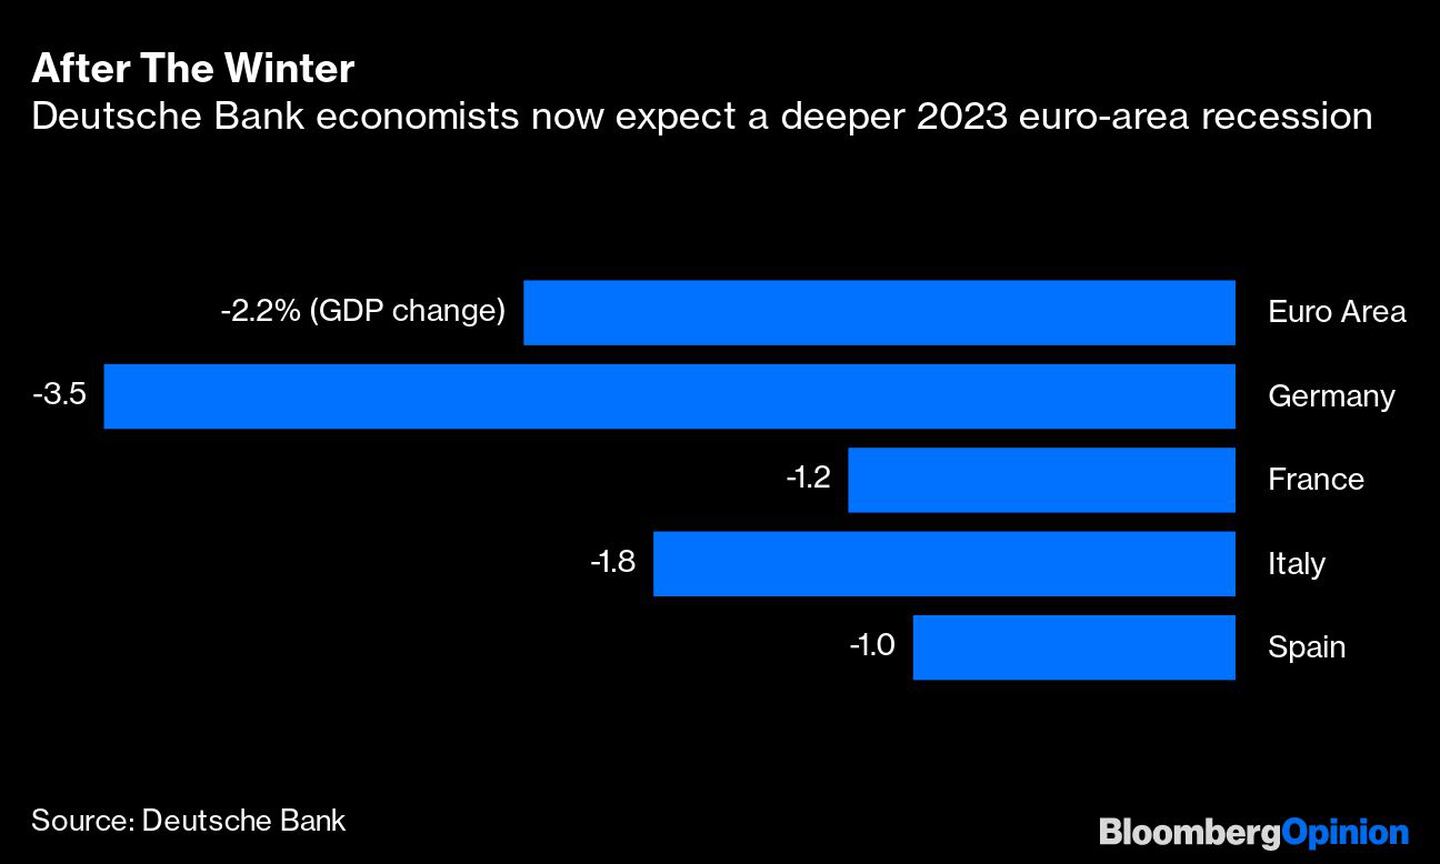  Los economistas del Deutsche Bank esperan ahora una recesión más profunda en la zona euro en 2023dfd